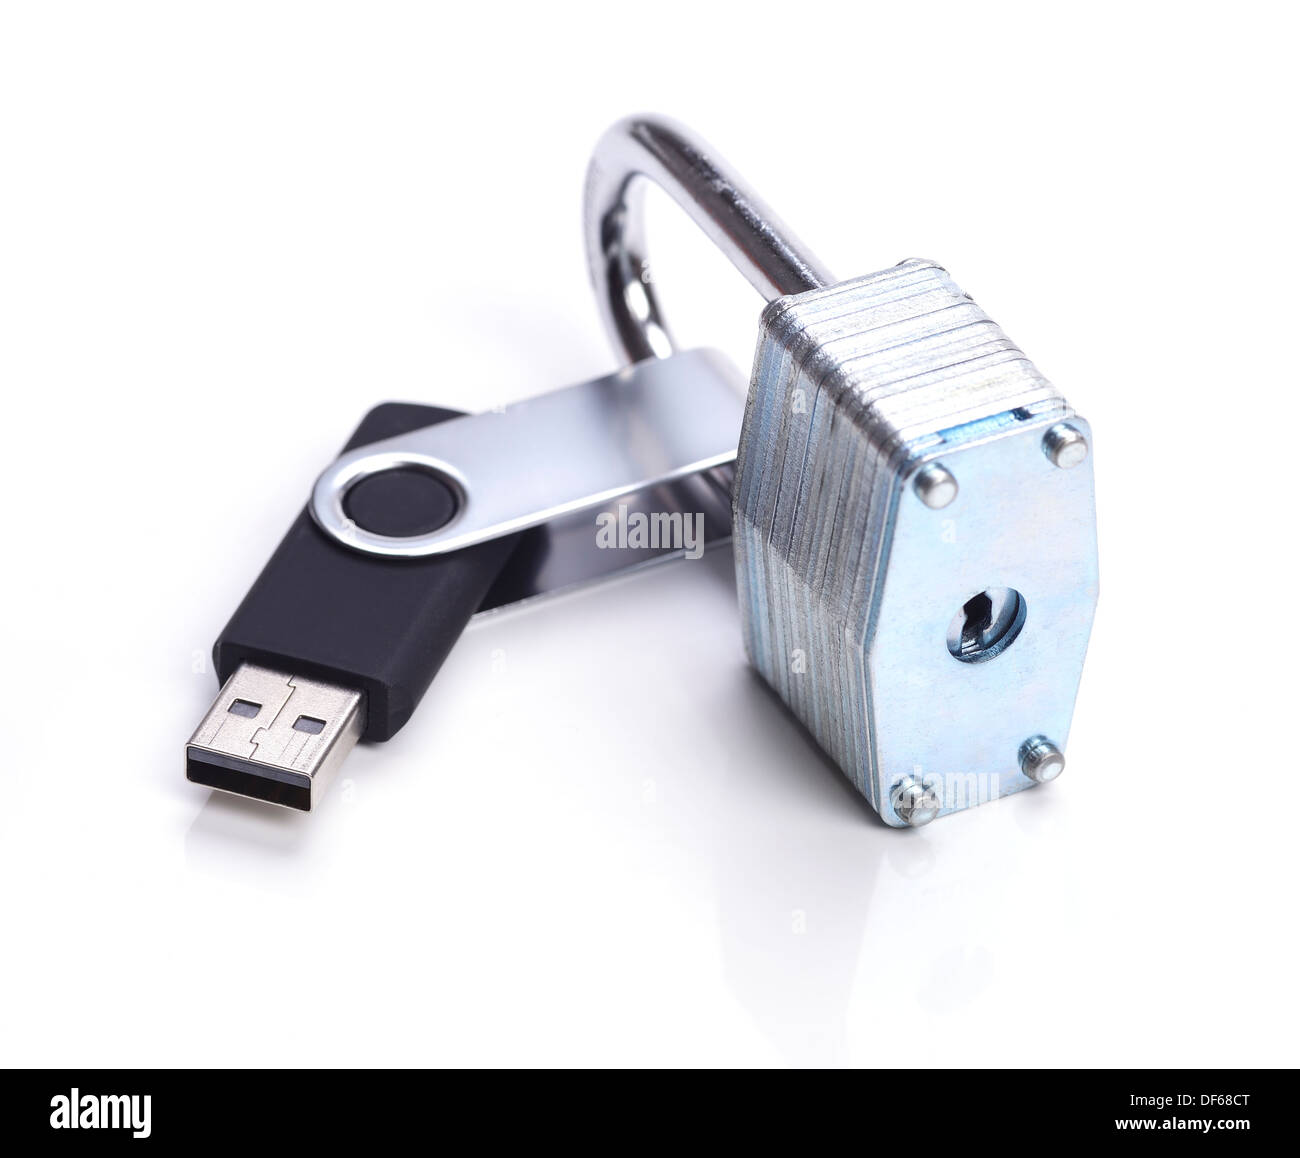 Memoria USB dentro de un candado Foto de stock